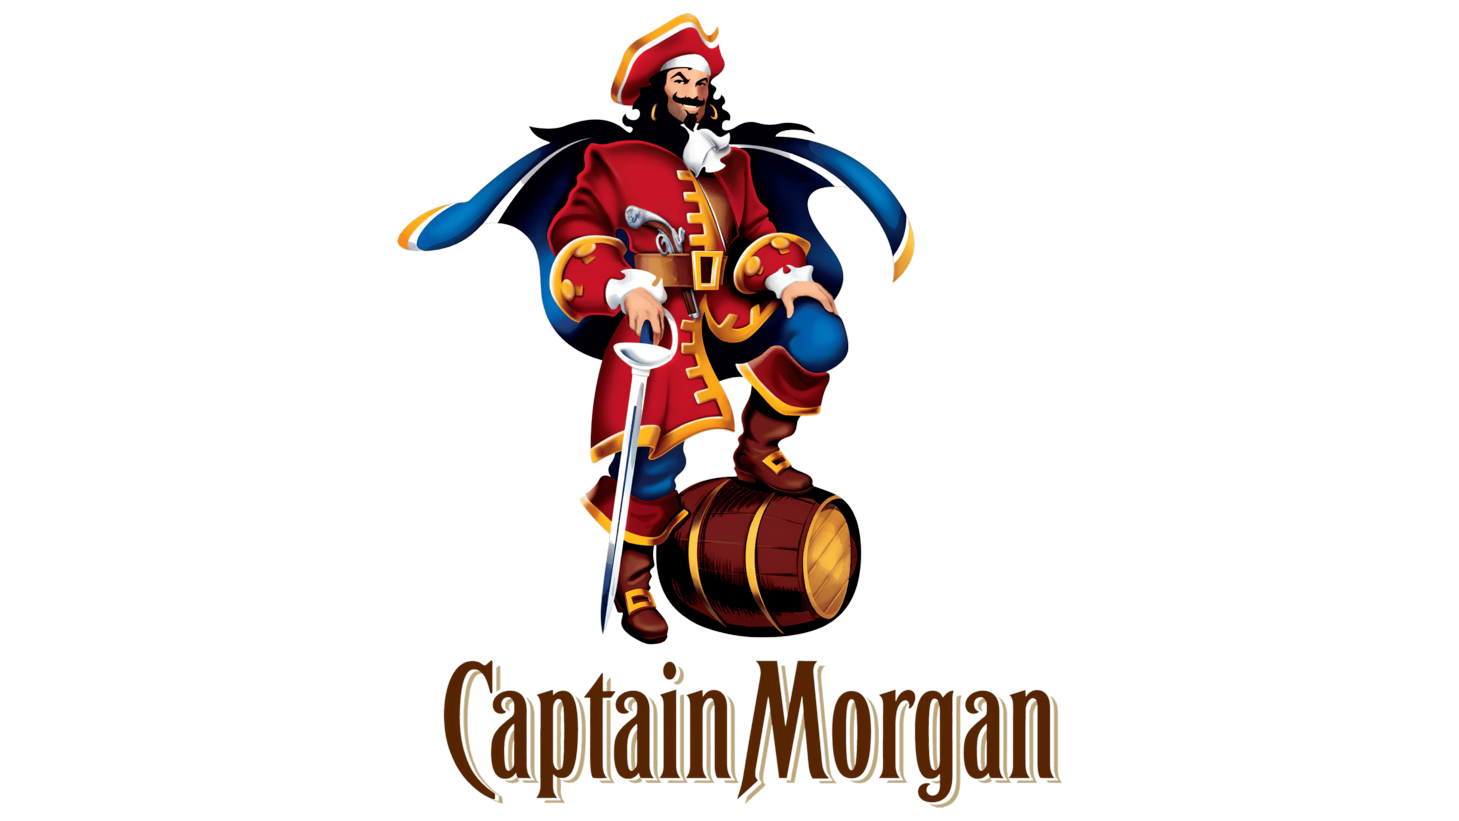 Captain morgan sign